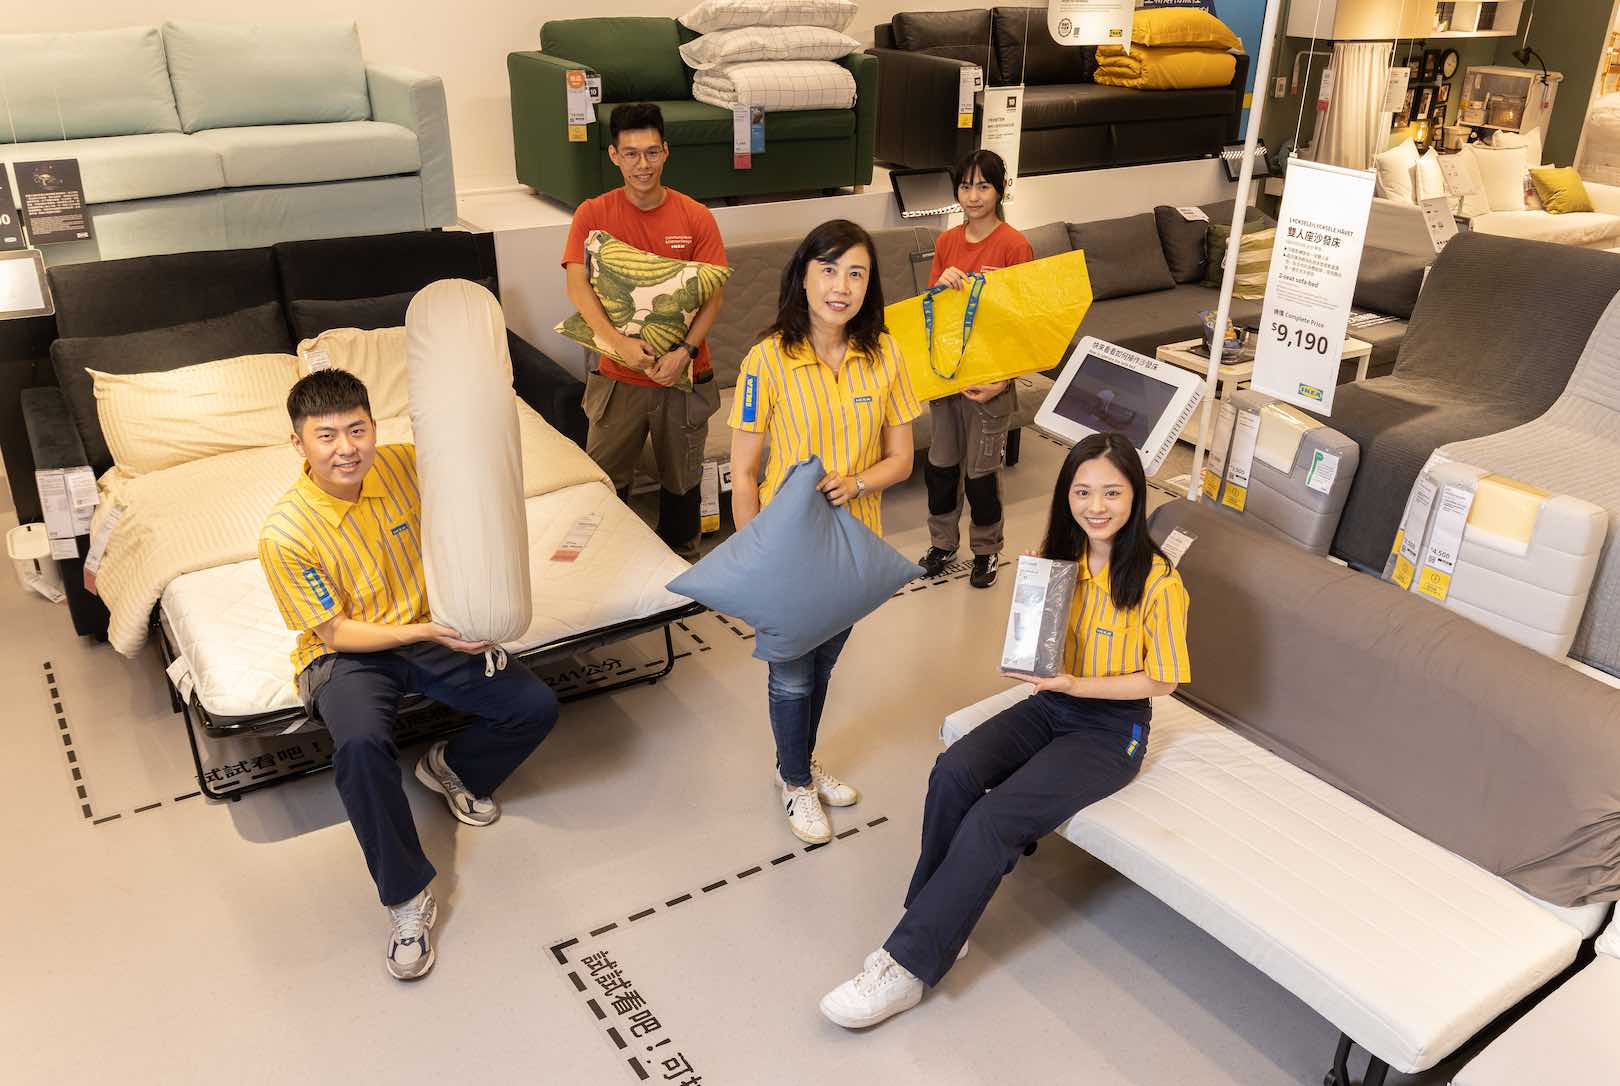 充滿活力的瑞典語 ”Hej!” （你好！）、黃藍相間的條紋制服，這是許多人對於家具零售龍頭IKEA最鮮明的印象。圖片來源：廖祐瑲_Cheers